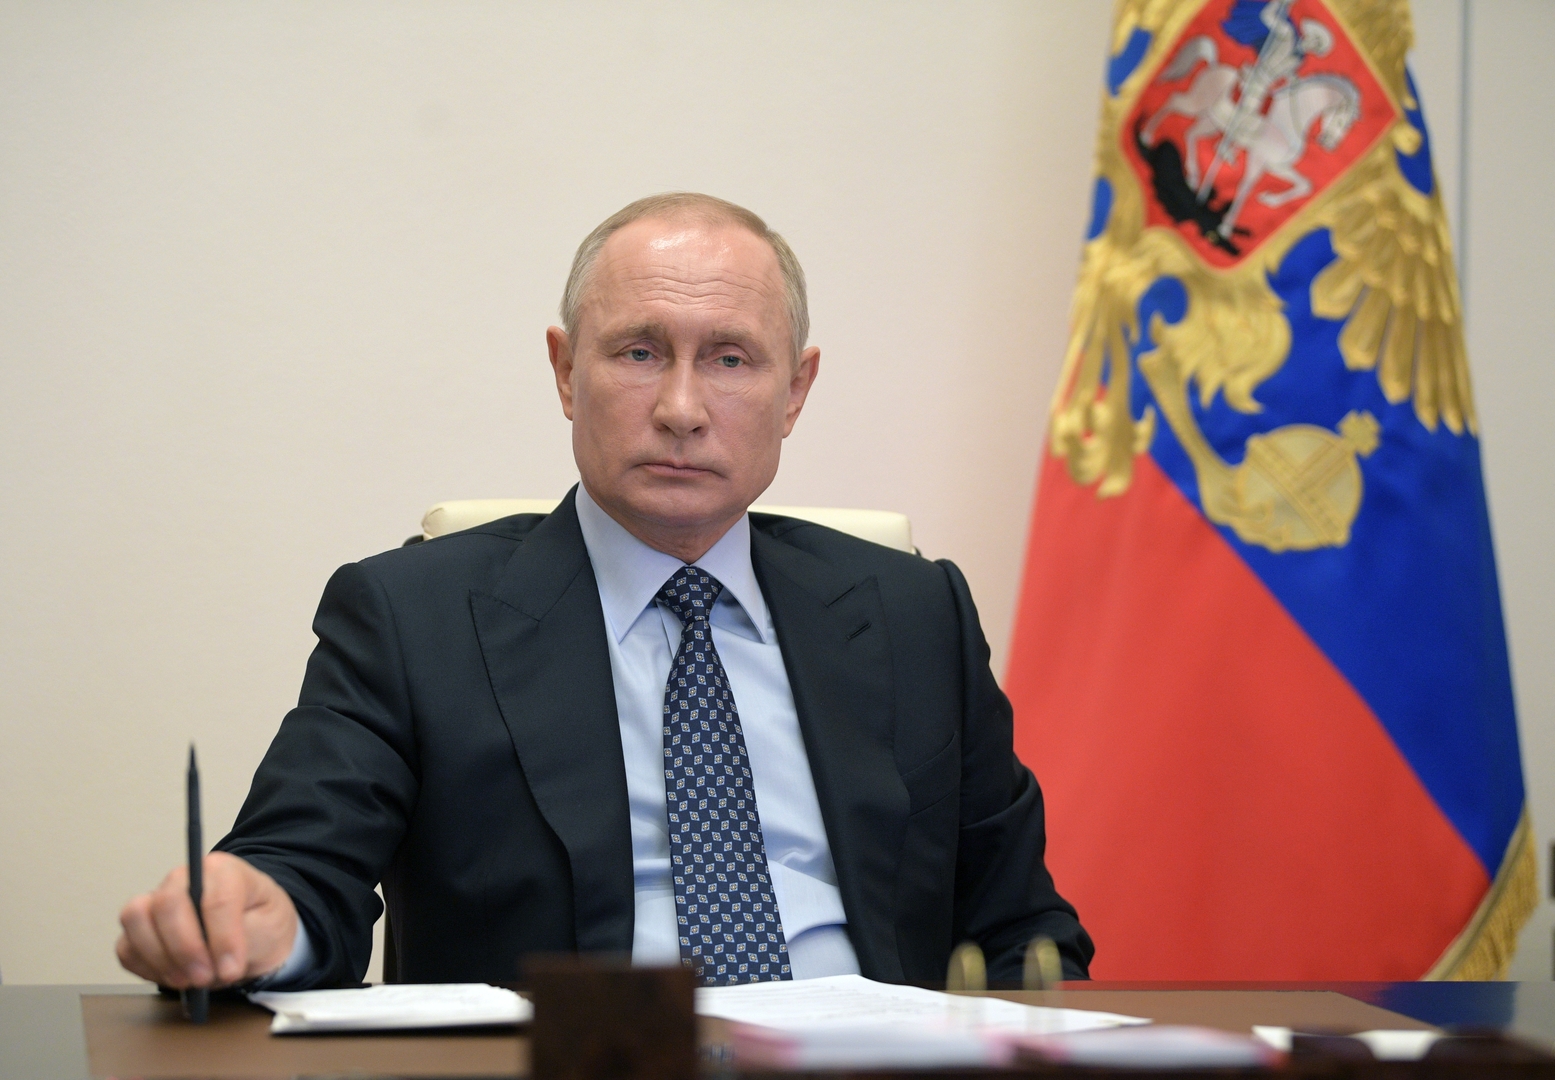 بوتين يكلف الحكومة الروسية بإعداد حزمة من التدابير الطارئة لدعم الاقتصاد